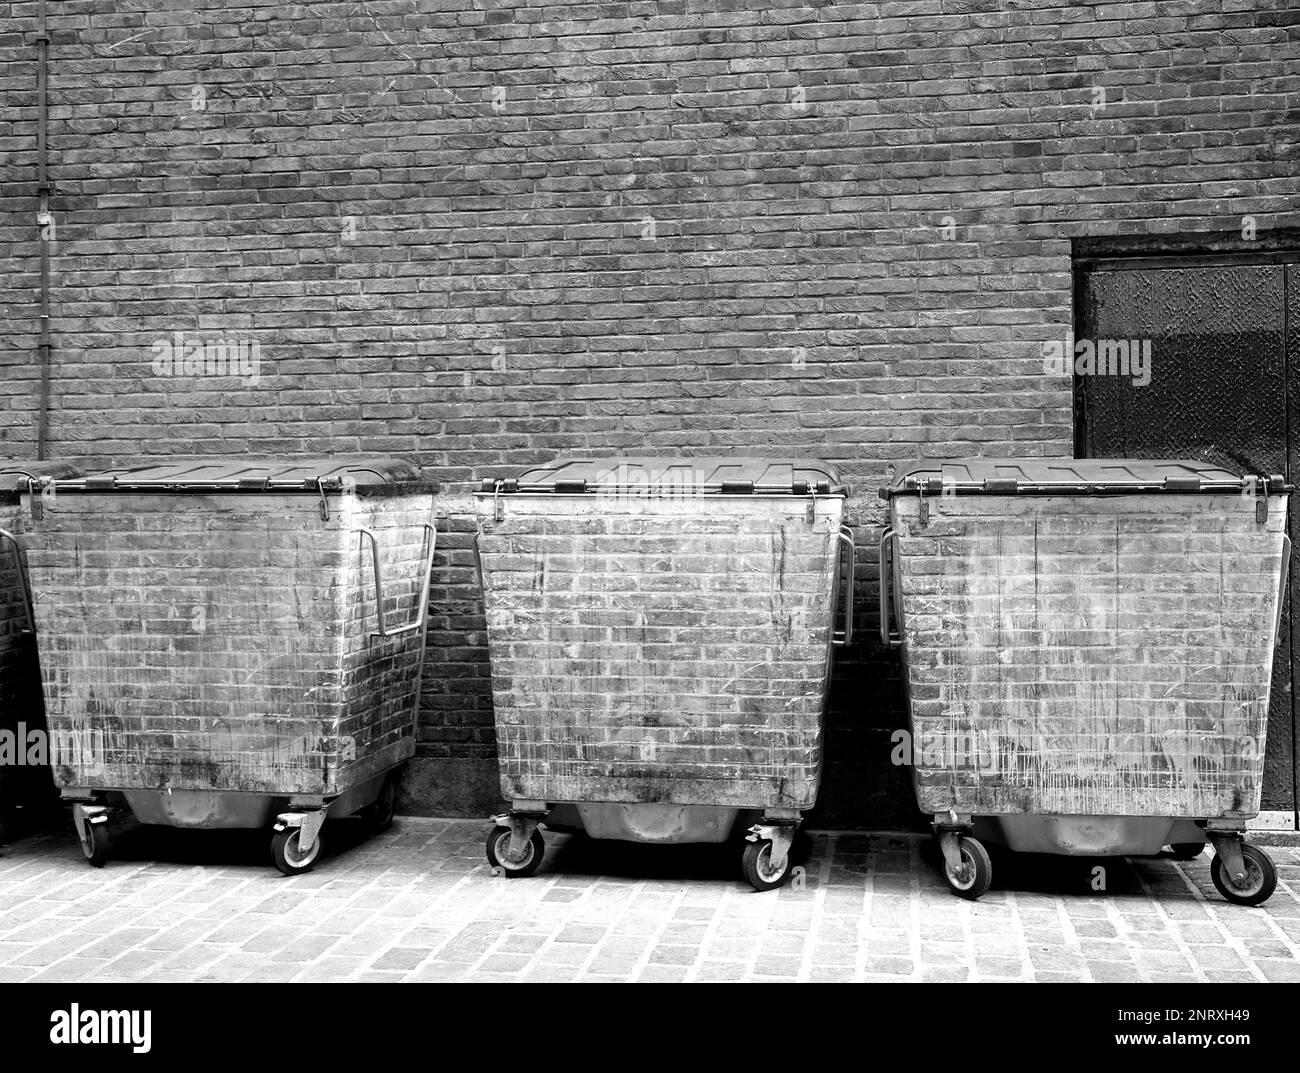 London Bins (Monochrome) Stock Photo